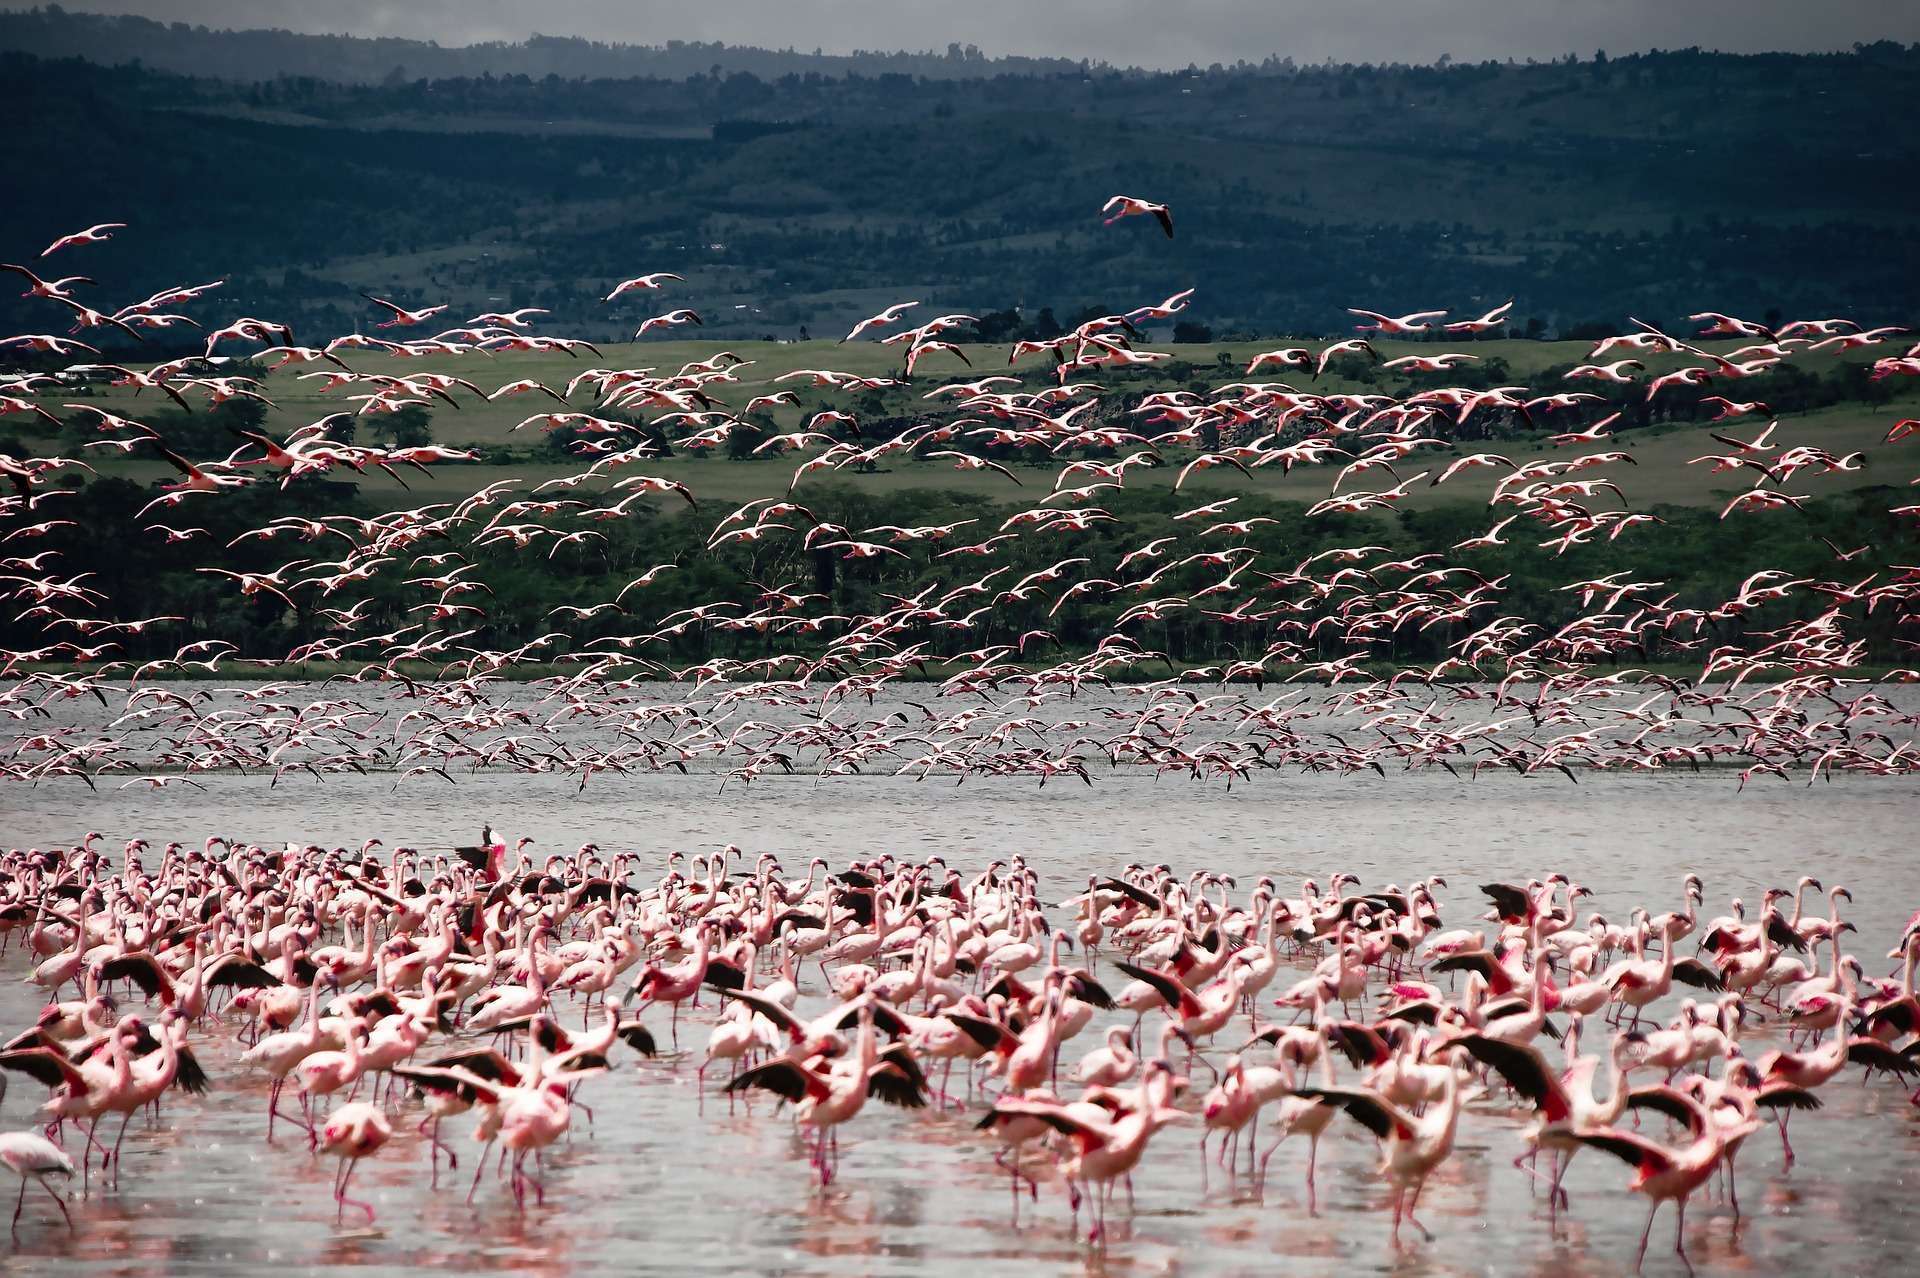 Flamingos in Africa